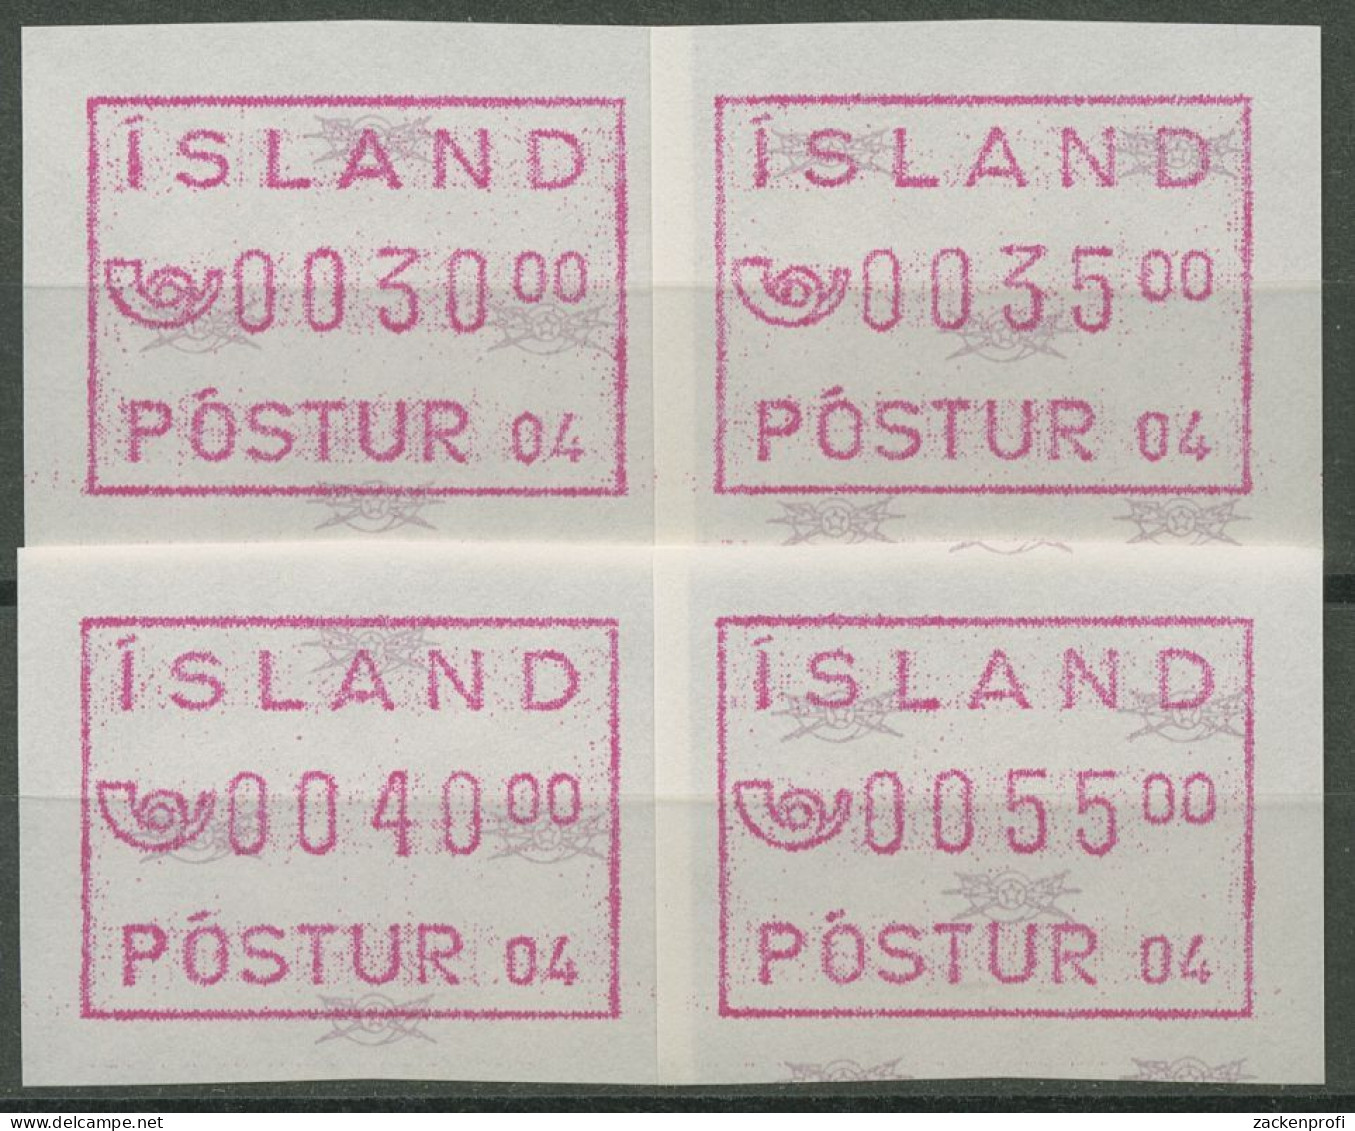 Island ATM 1993 Freimarke Automat 04, Satz 4 Werte, ATM 2.2 S2 Postfrisch - Franking Labels